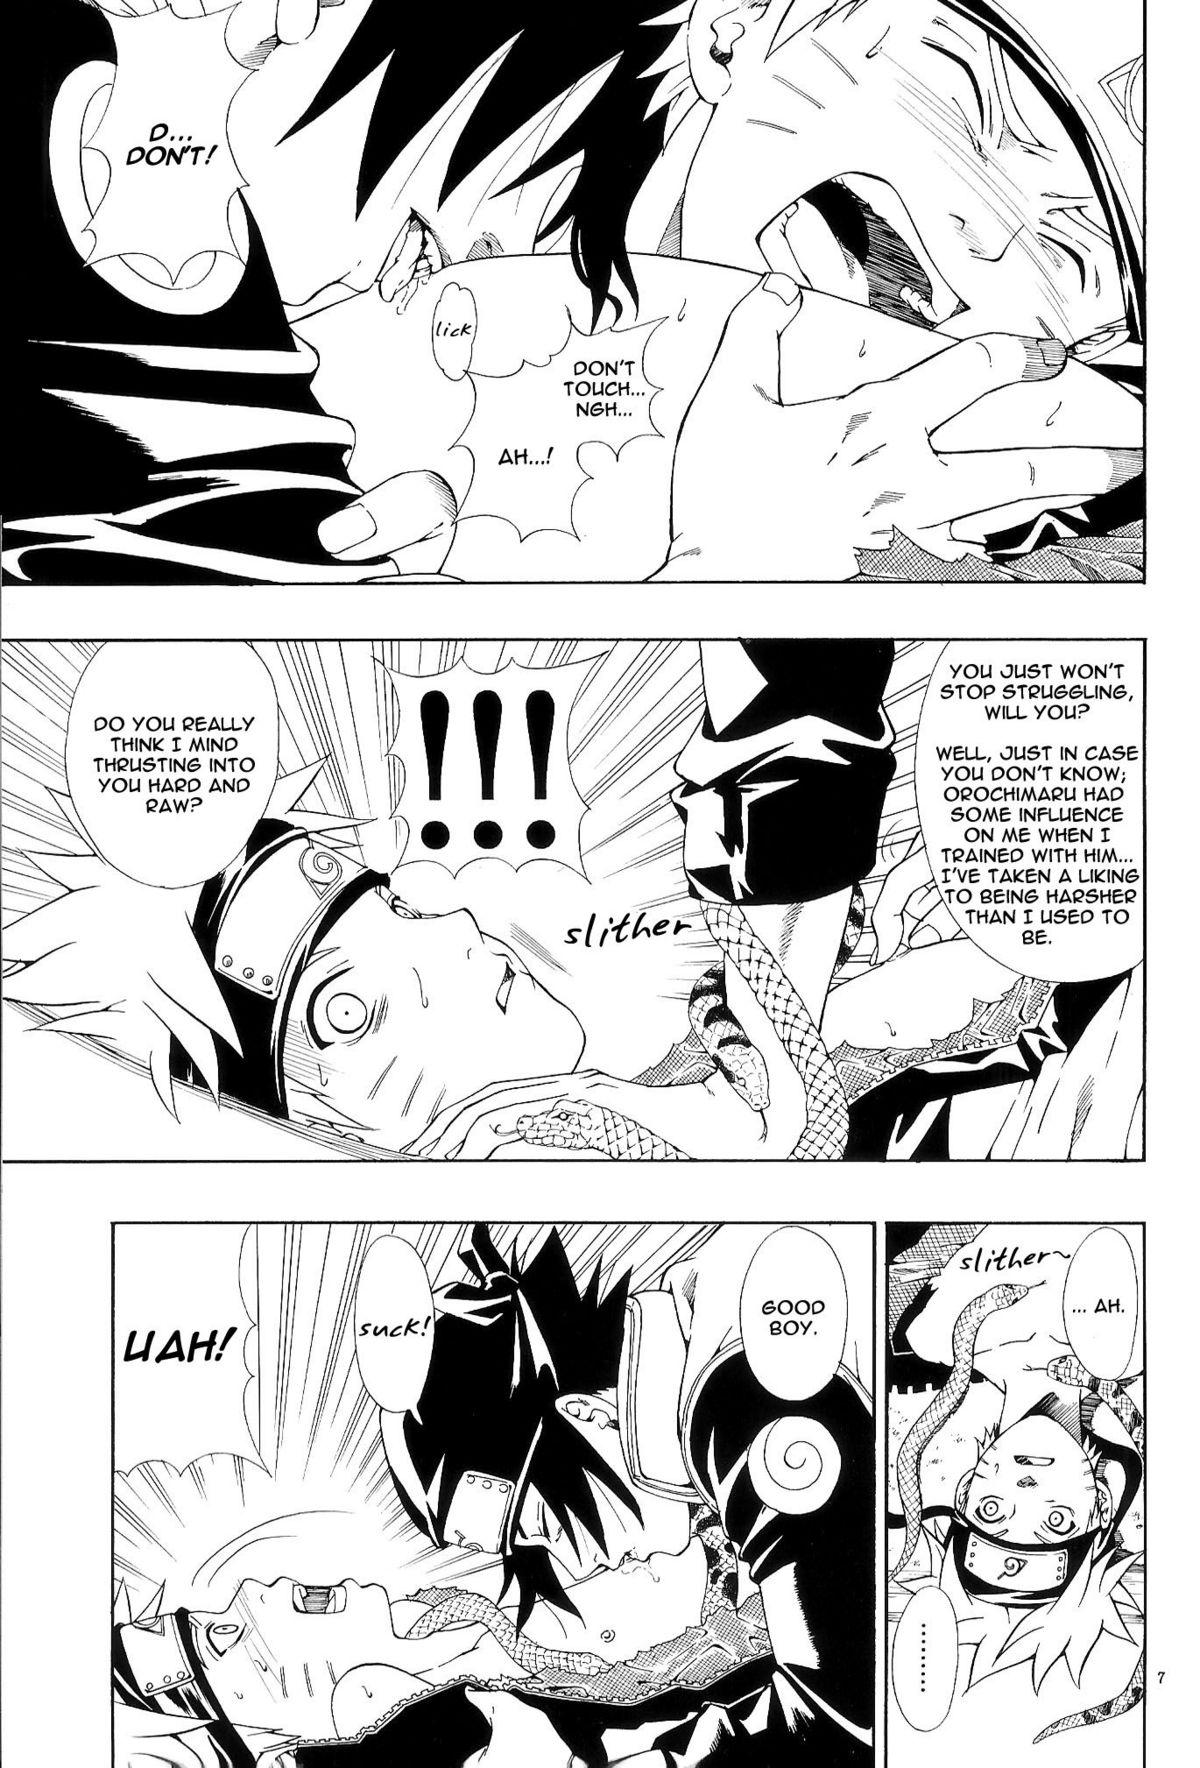 Taiwan ERO ERO²: Volume 1.5 (NARUTO) [Sasuke X Naruto] YAOI -ENG- - Naruto Cfnm - Page 6